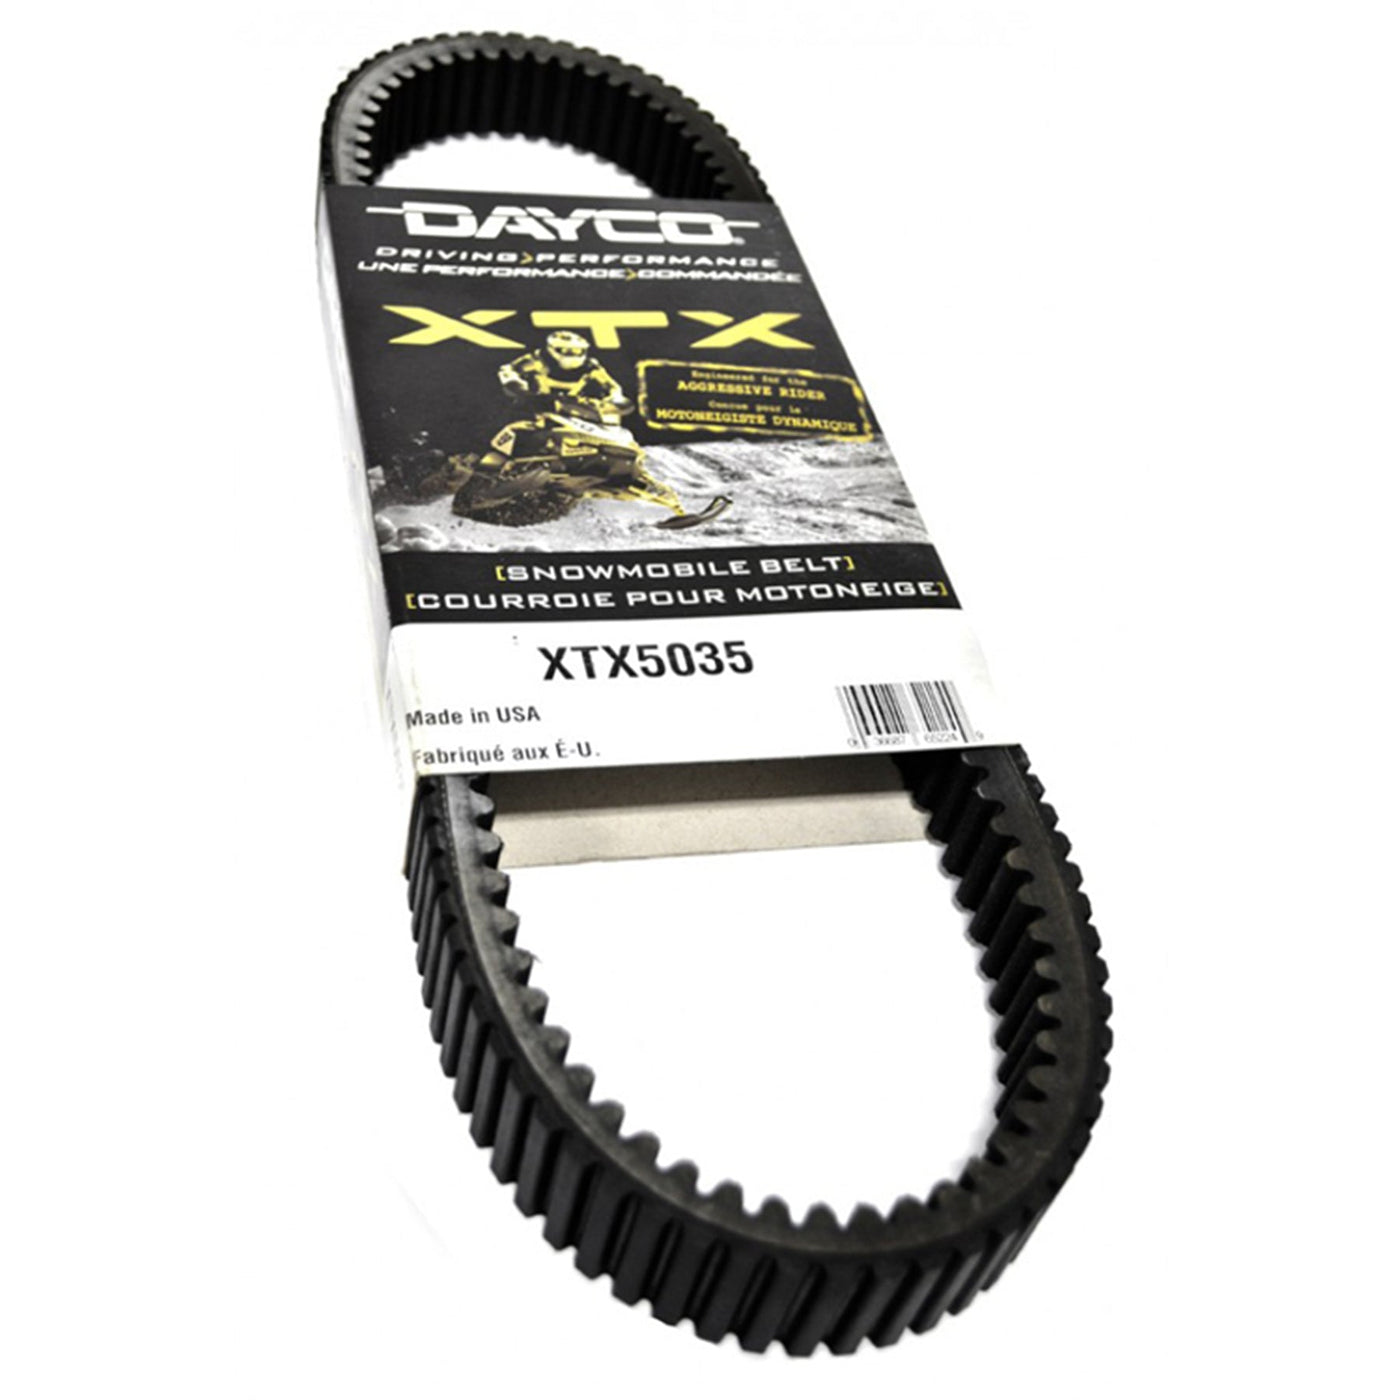 Dayco XTX5048 XTX Drive Snowmobile Belt #XTX5048